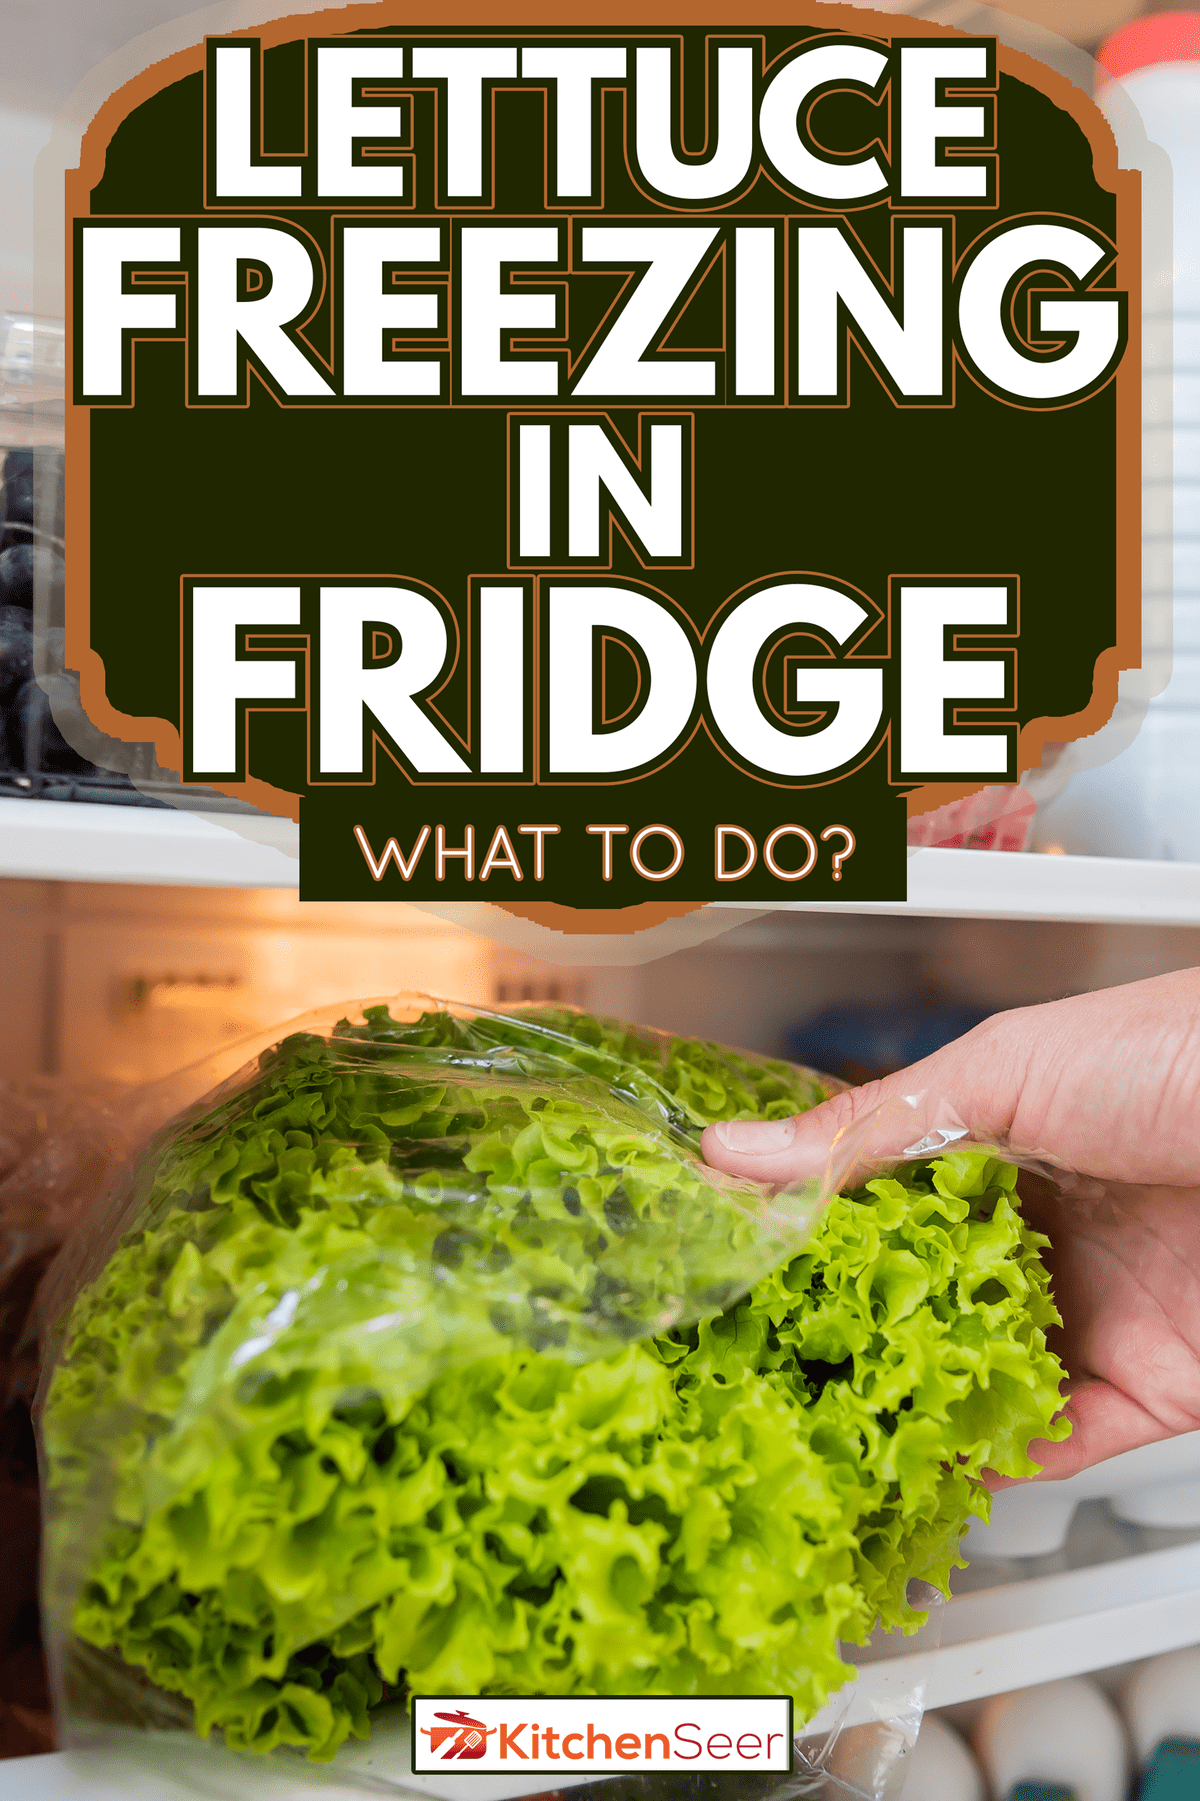 塑料袋里的生菜-冰箱里冷冻的生菜-该怎么办